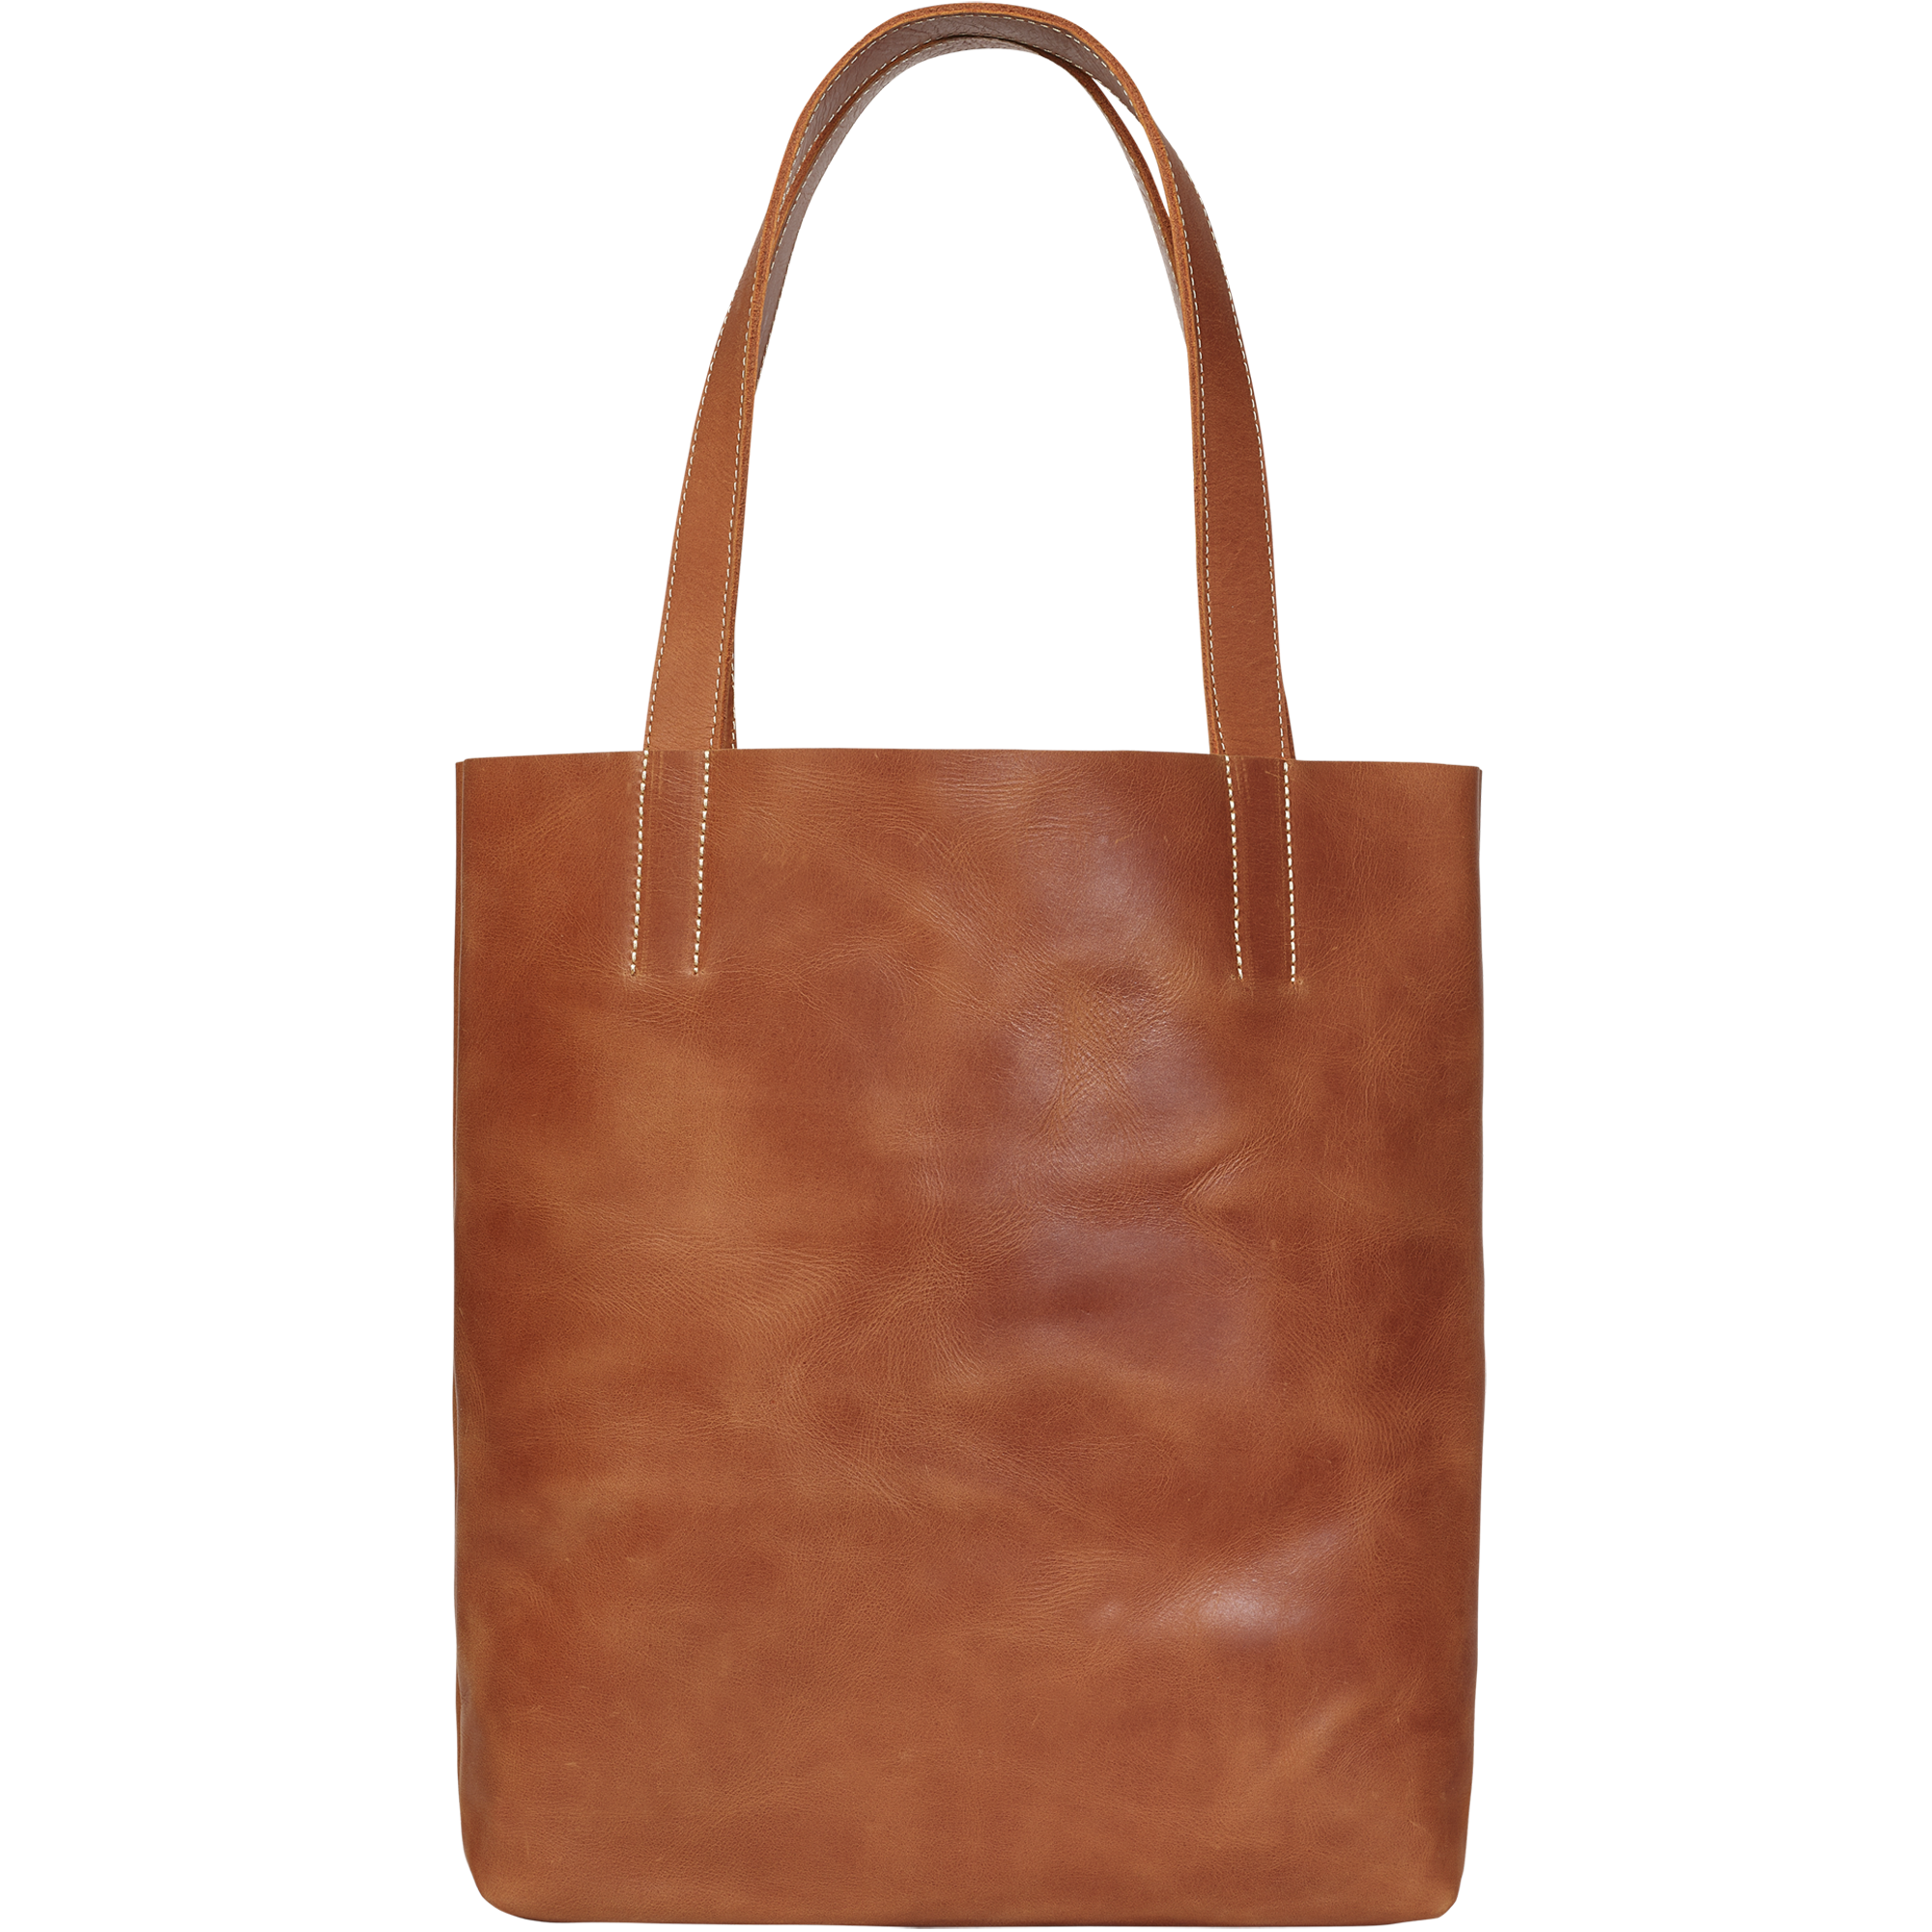 Handbag Brown Magazine Tote Bag